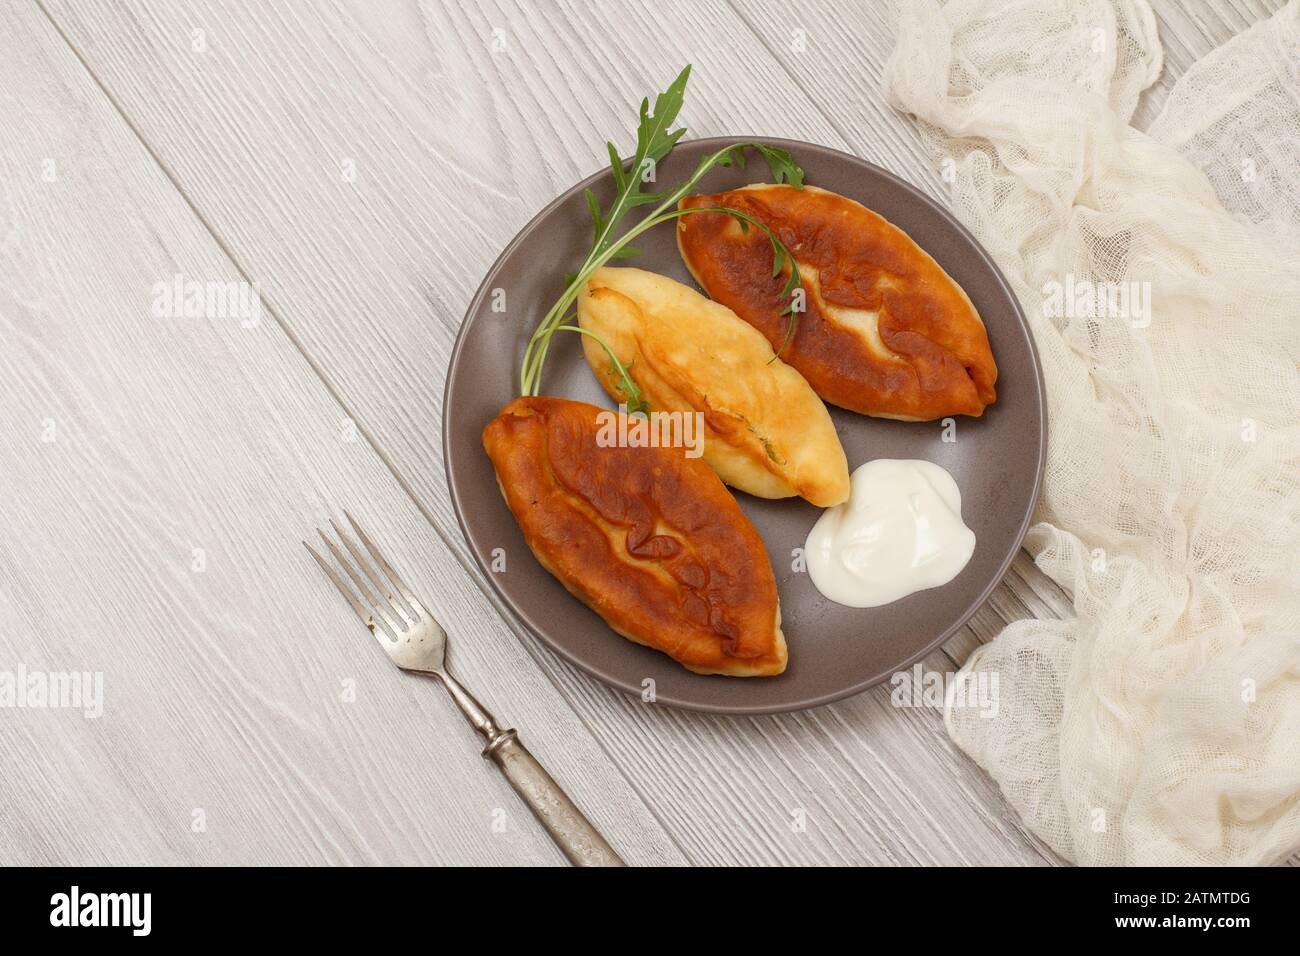 Plaque avec tartes fries, crème aigre et fourchette, gaze blanche sur planches en bois. Vue de dessus. Banque D'Images